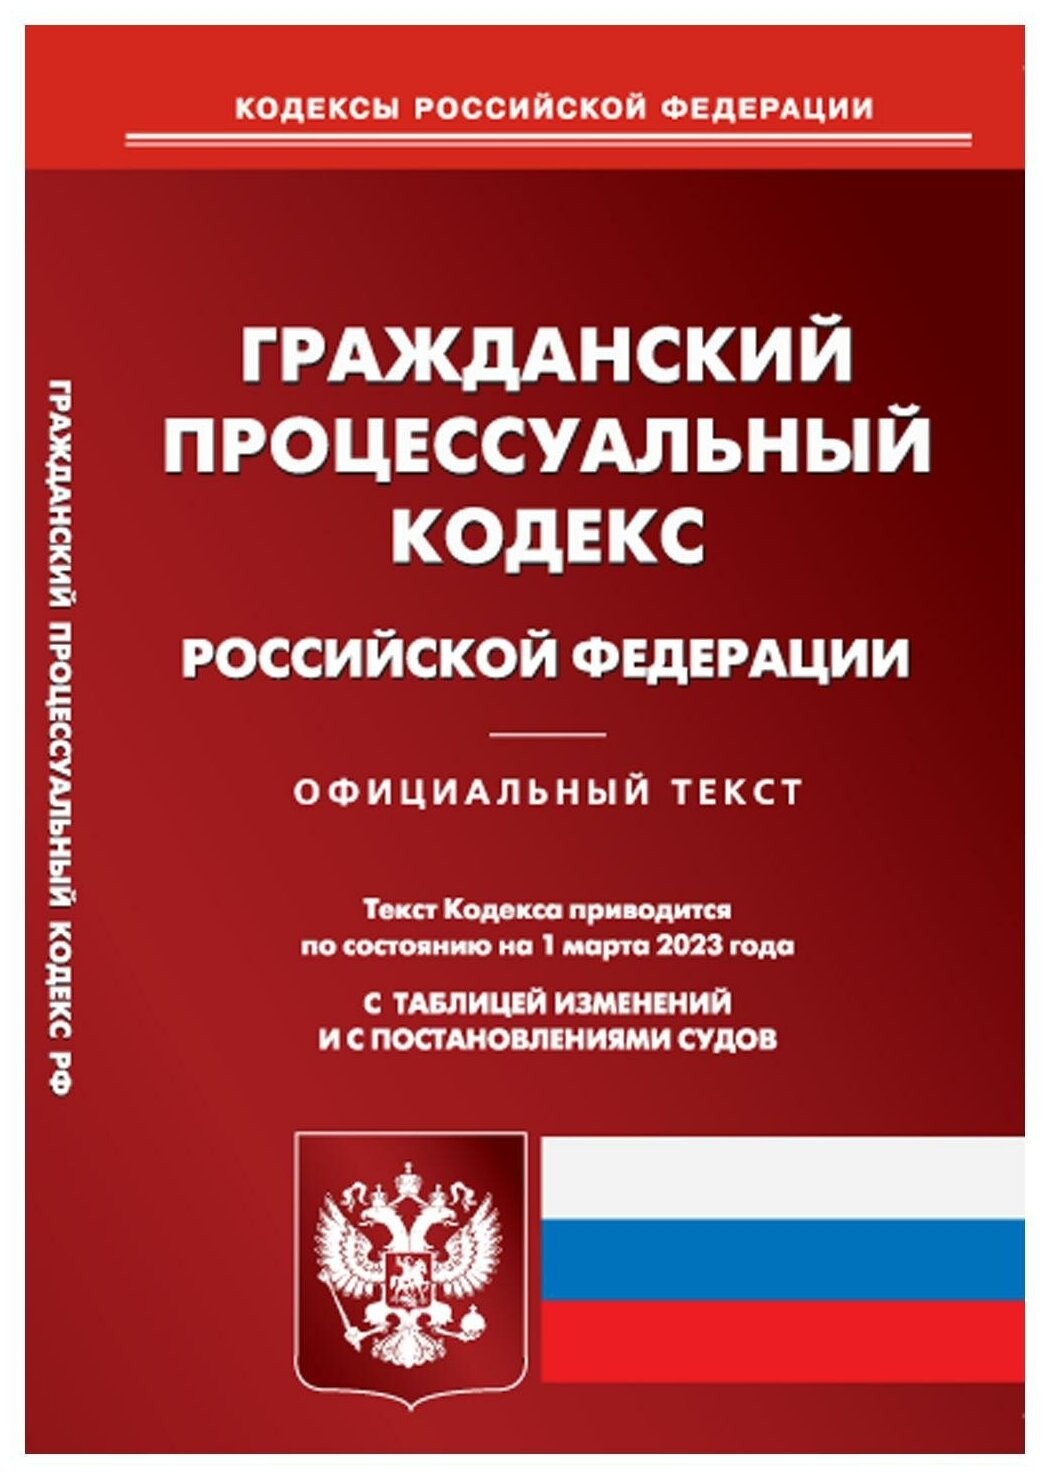 Гражданский процессуальный кодекс Российской Федерации. По состоянию на 01 марта 2023 года с таблицей изменений и с постановлениями судов - фото №1